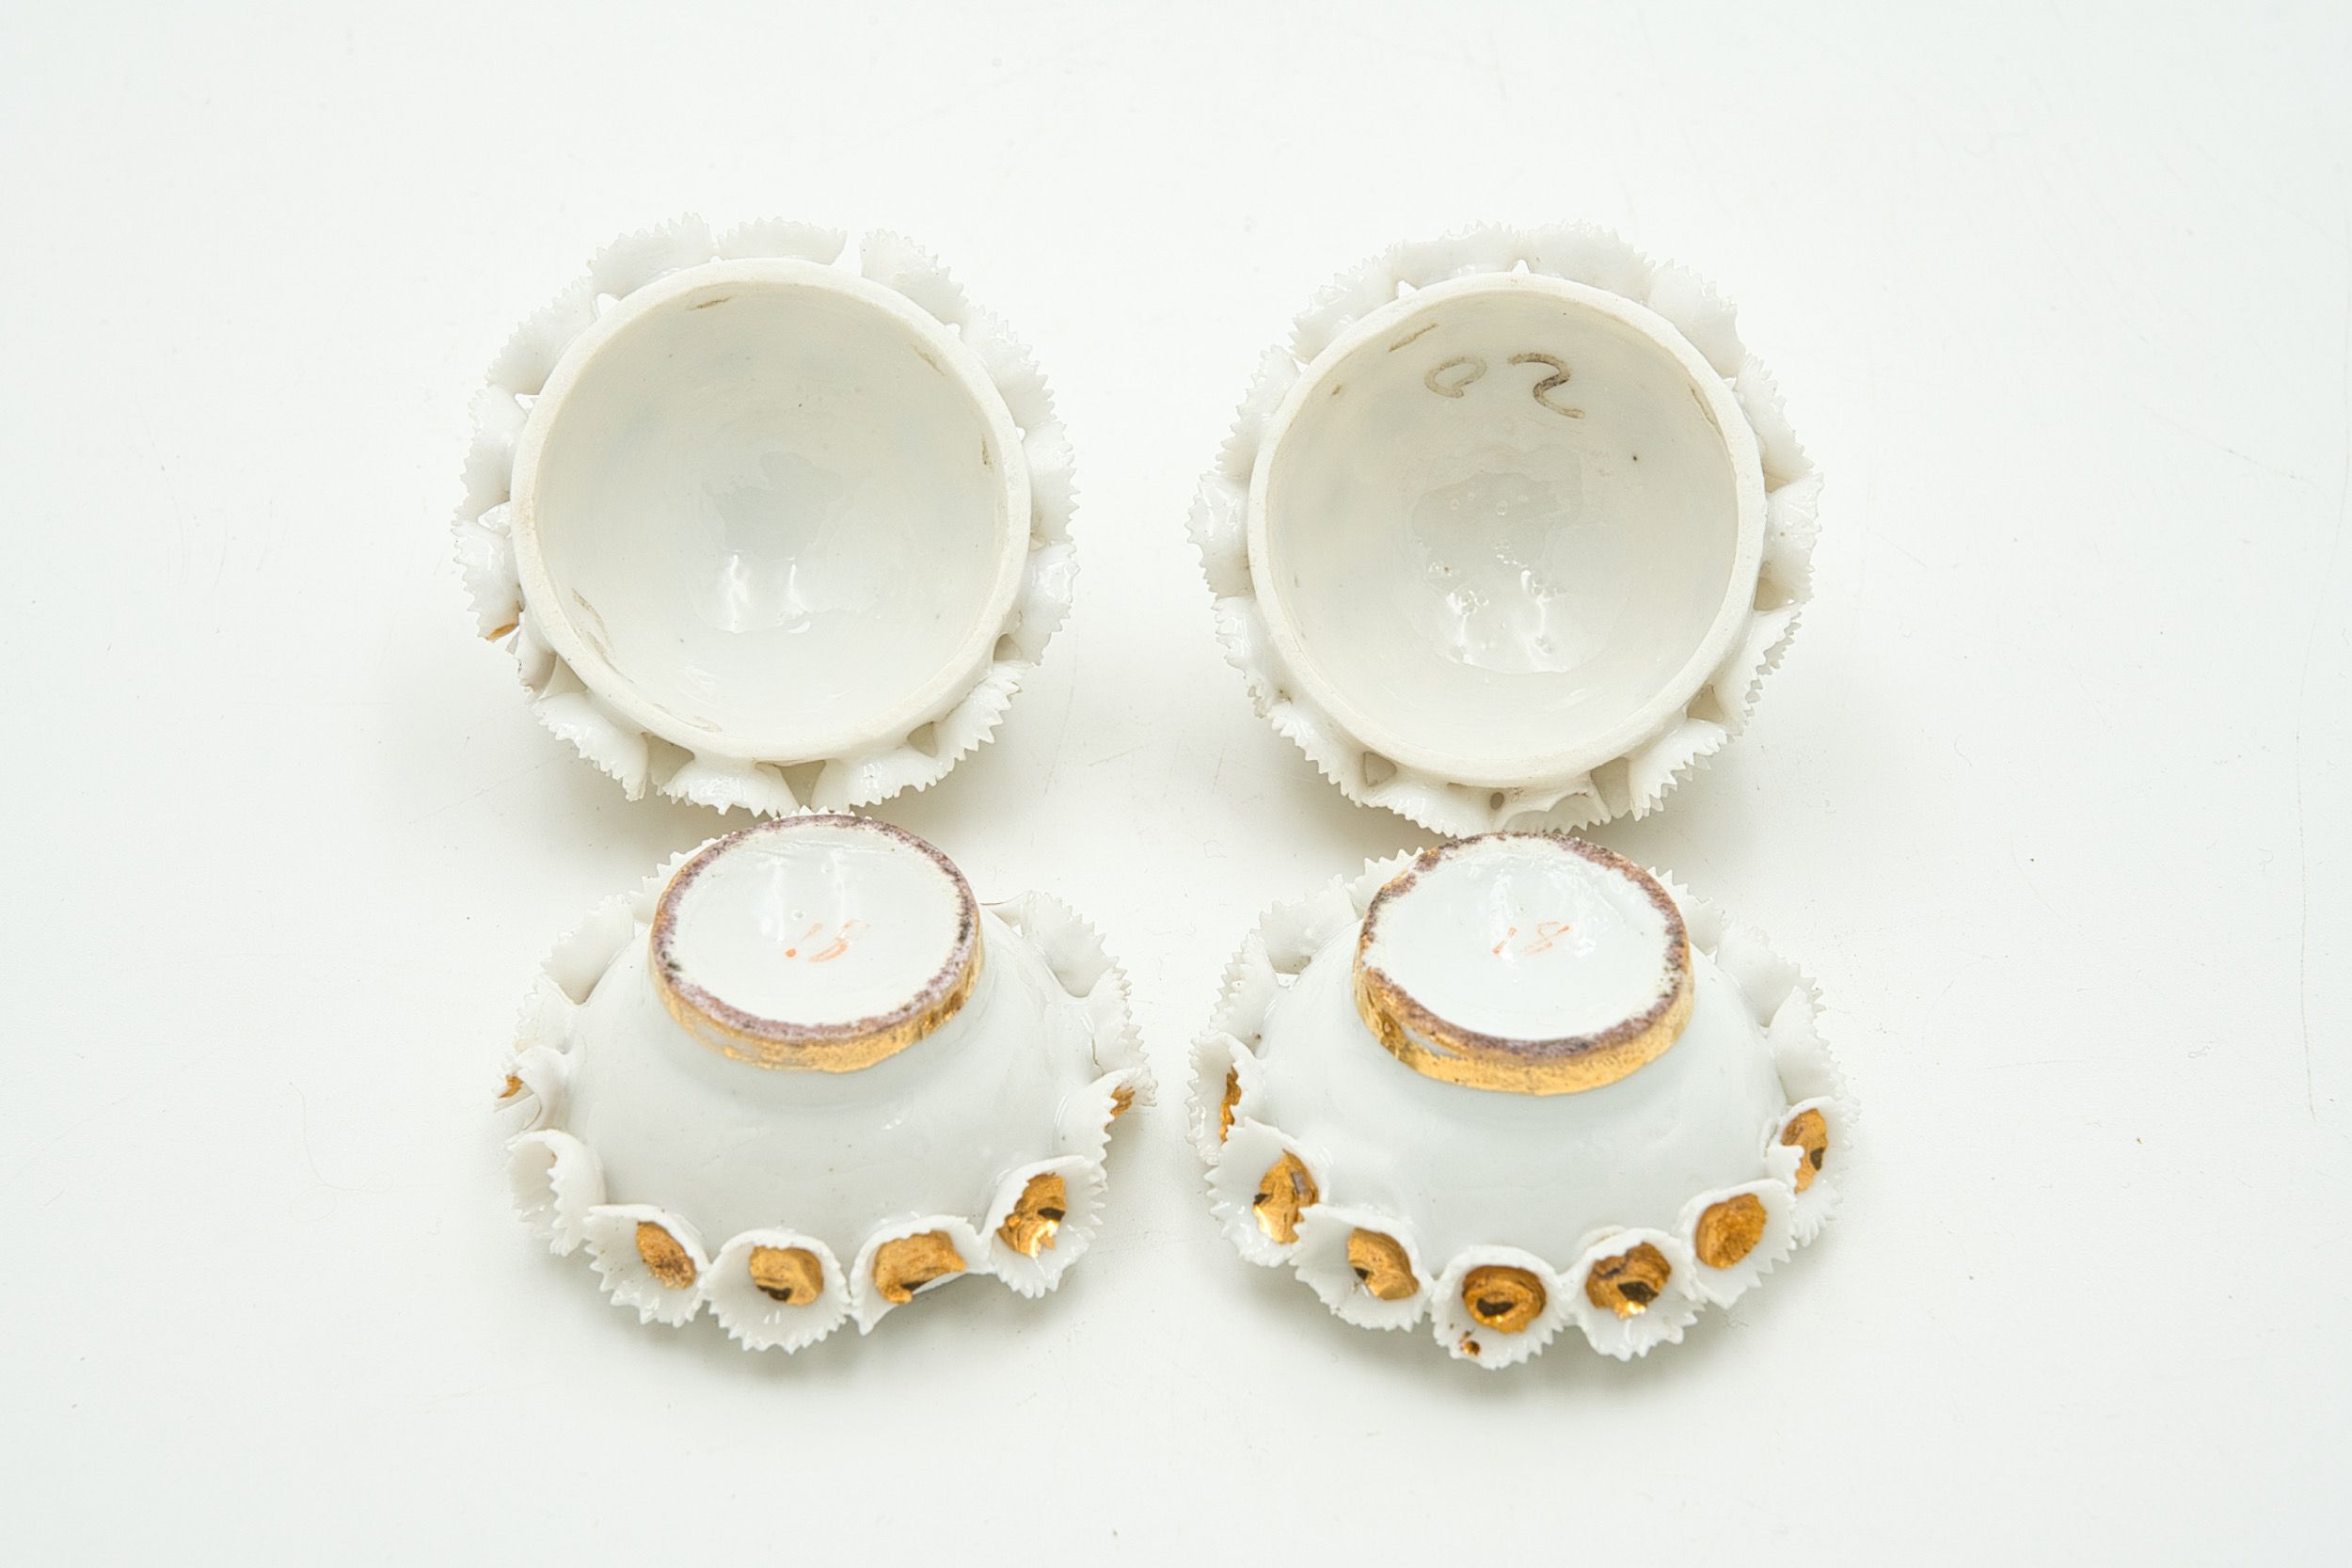 Guarda-jóias Bola de Neve Porcelana